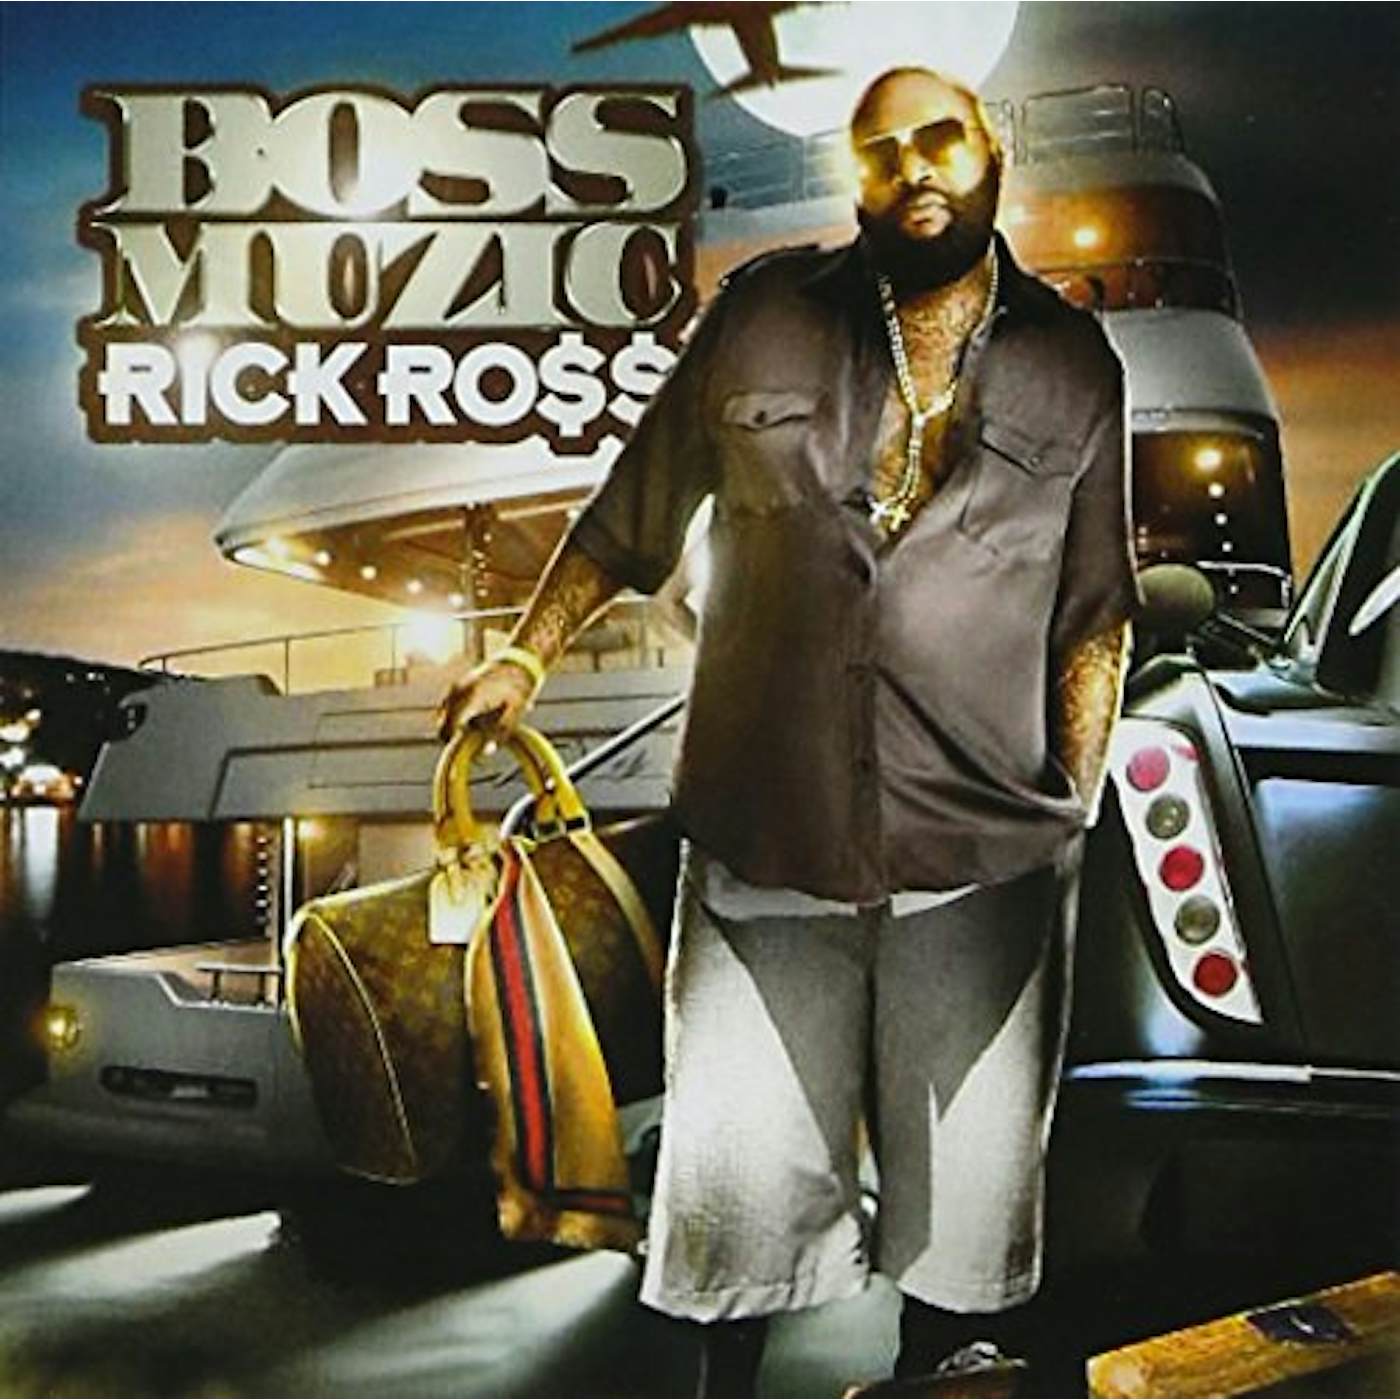 Rick Ross BOSS MUSIK CD